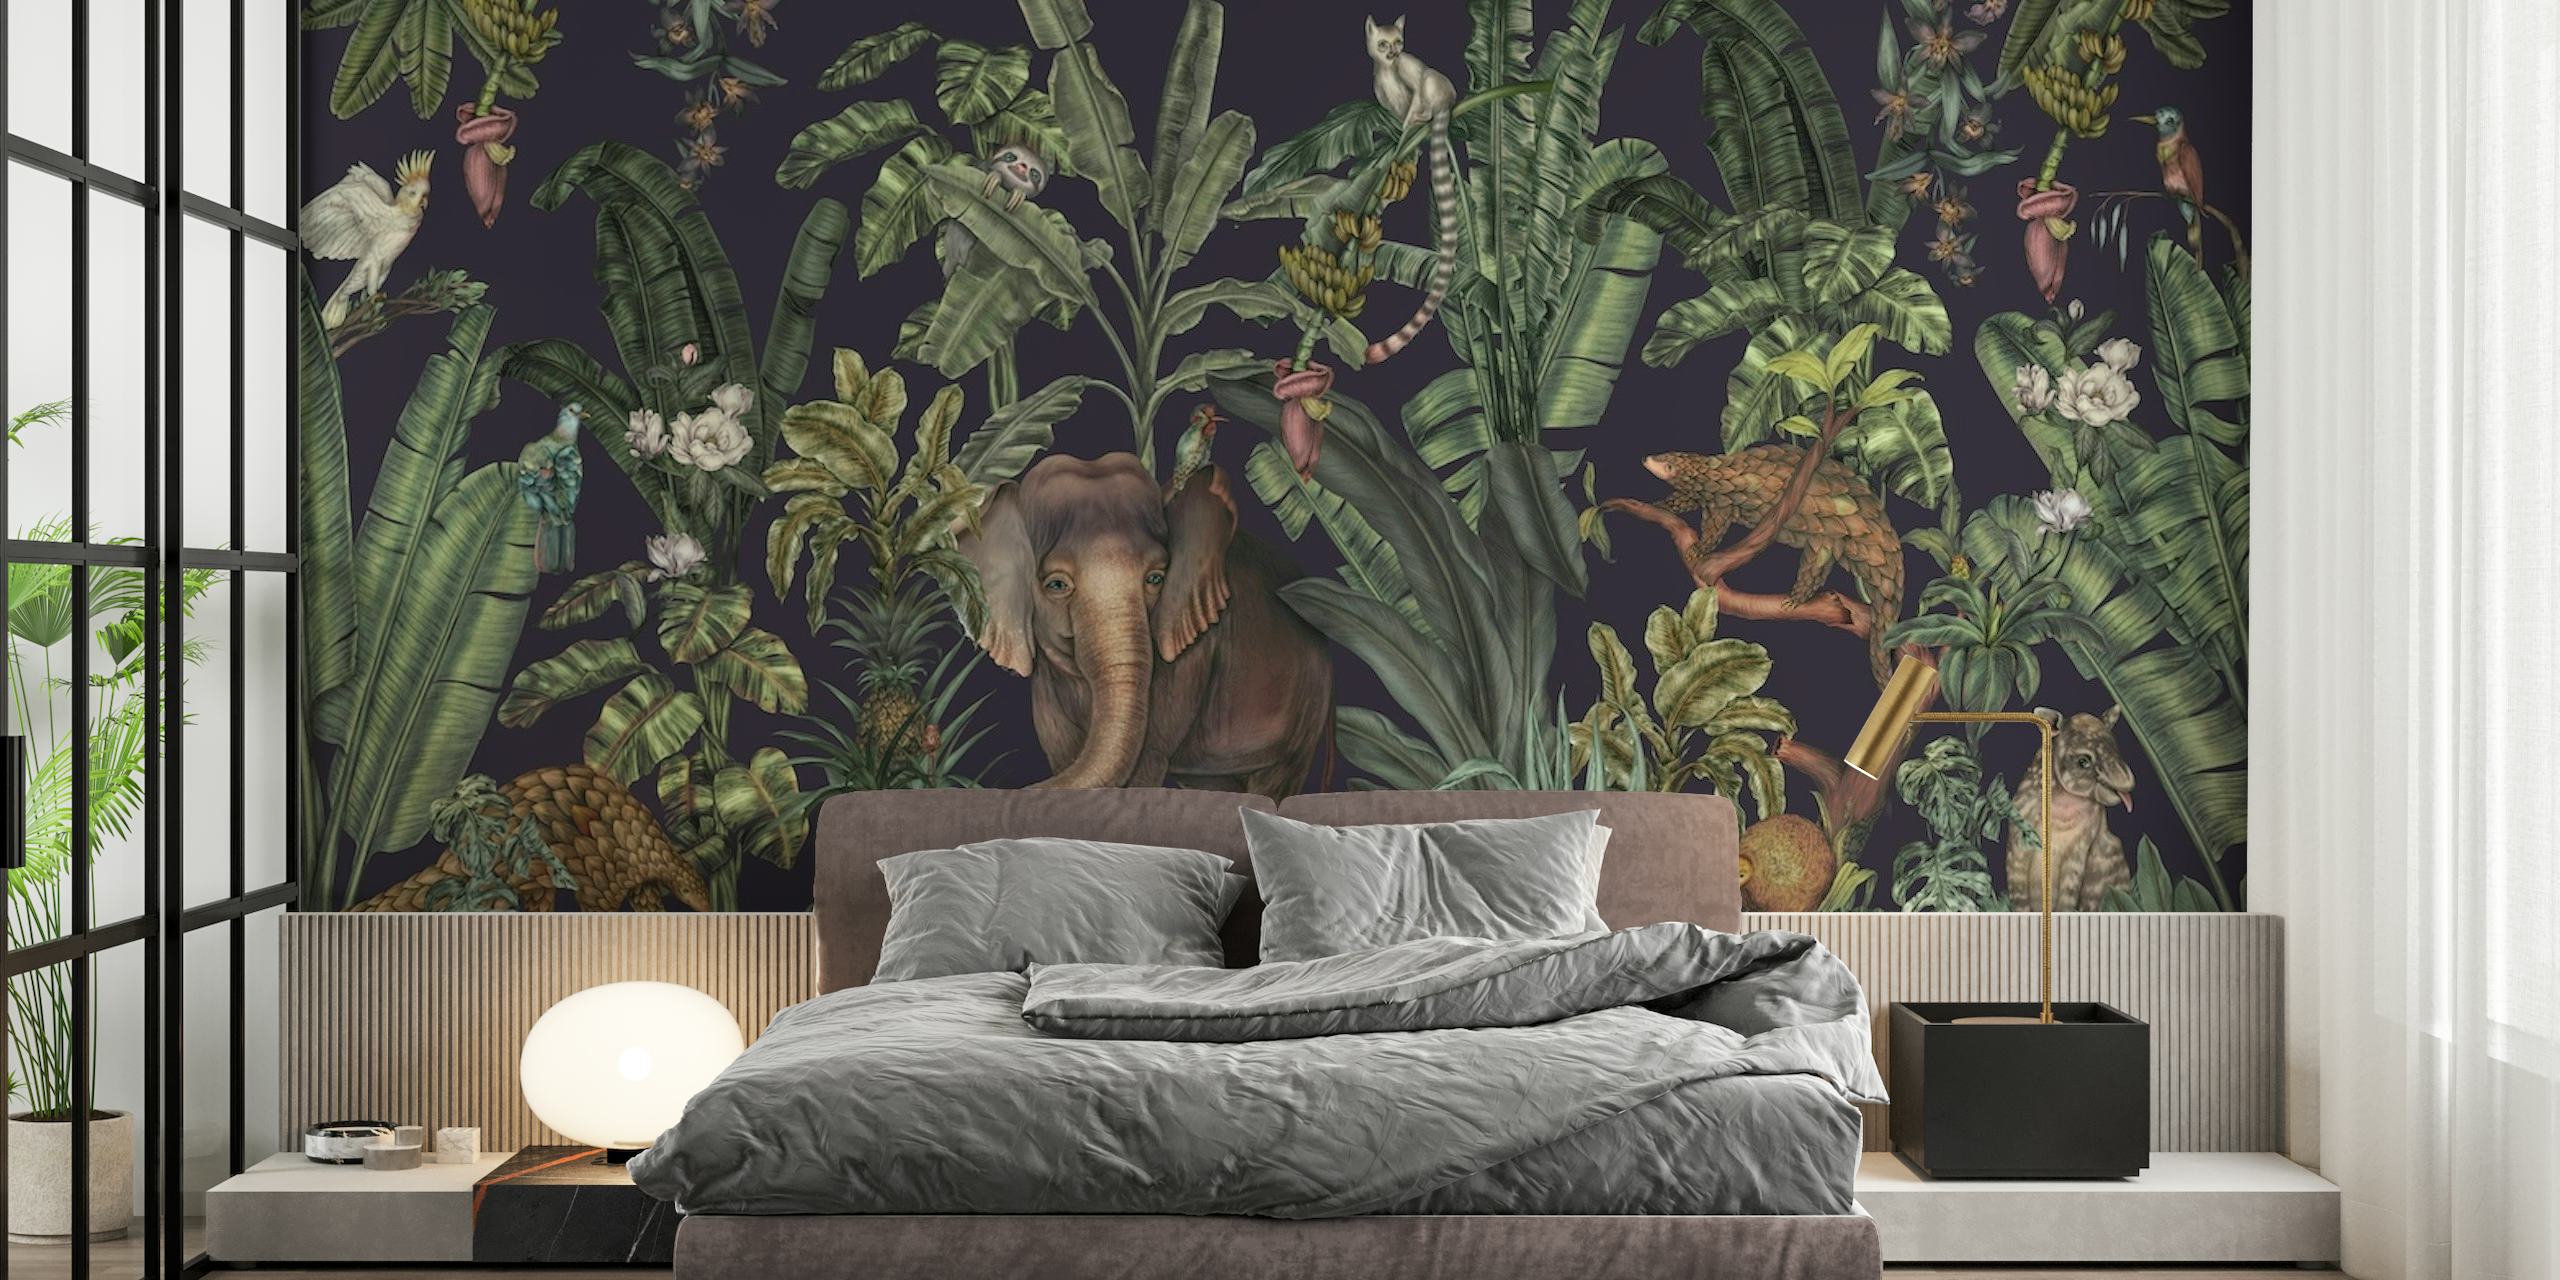 Mural de parede de selva tropical com vegetação densa e vida selvagem escondida